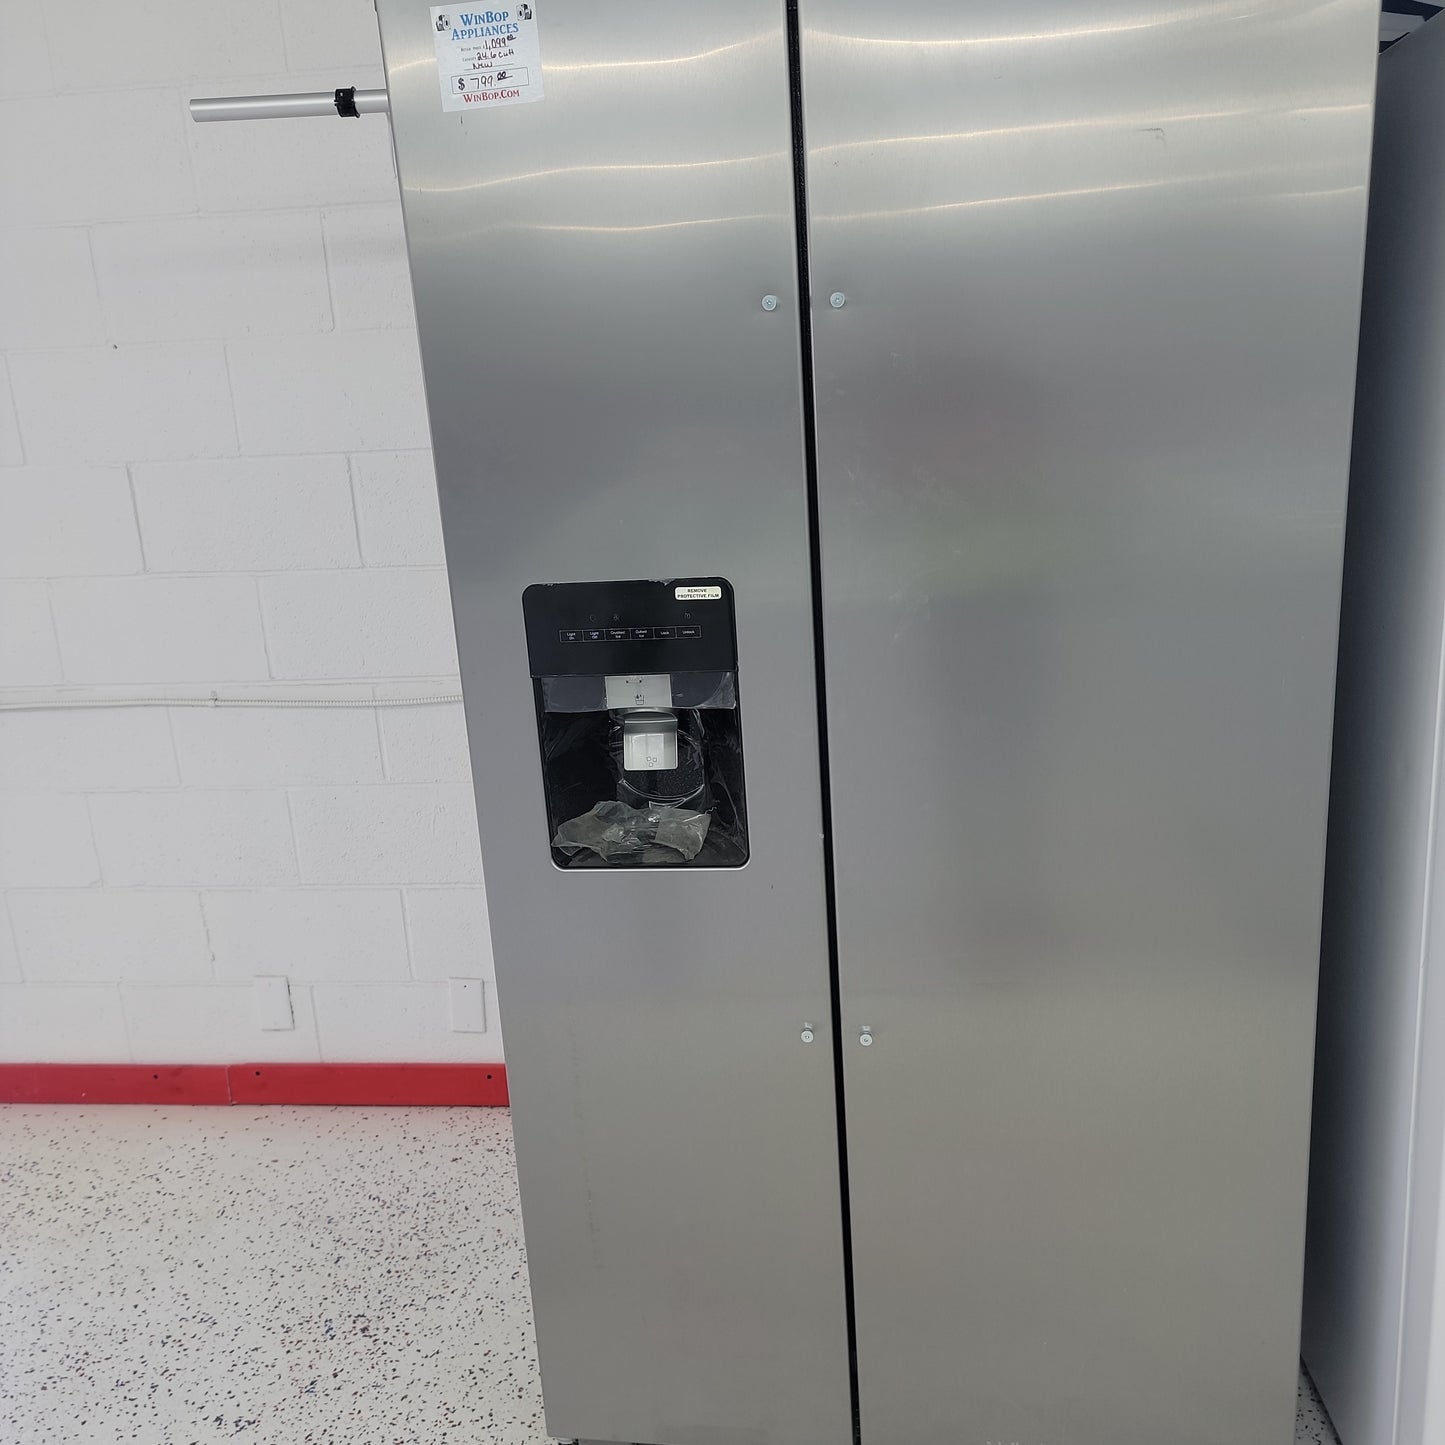 New Whirlpool Refrigerator